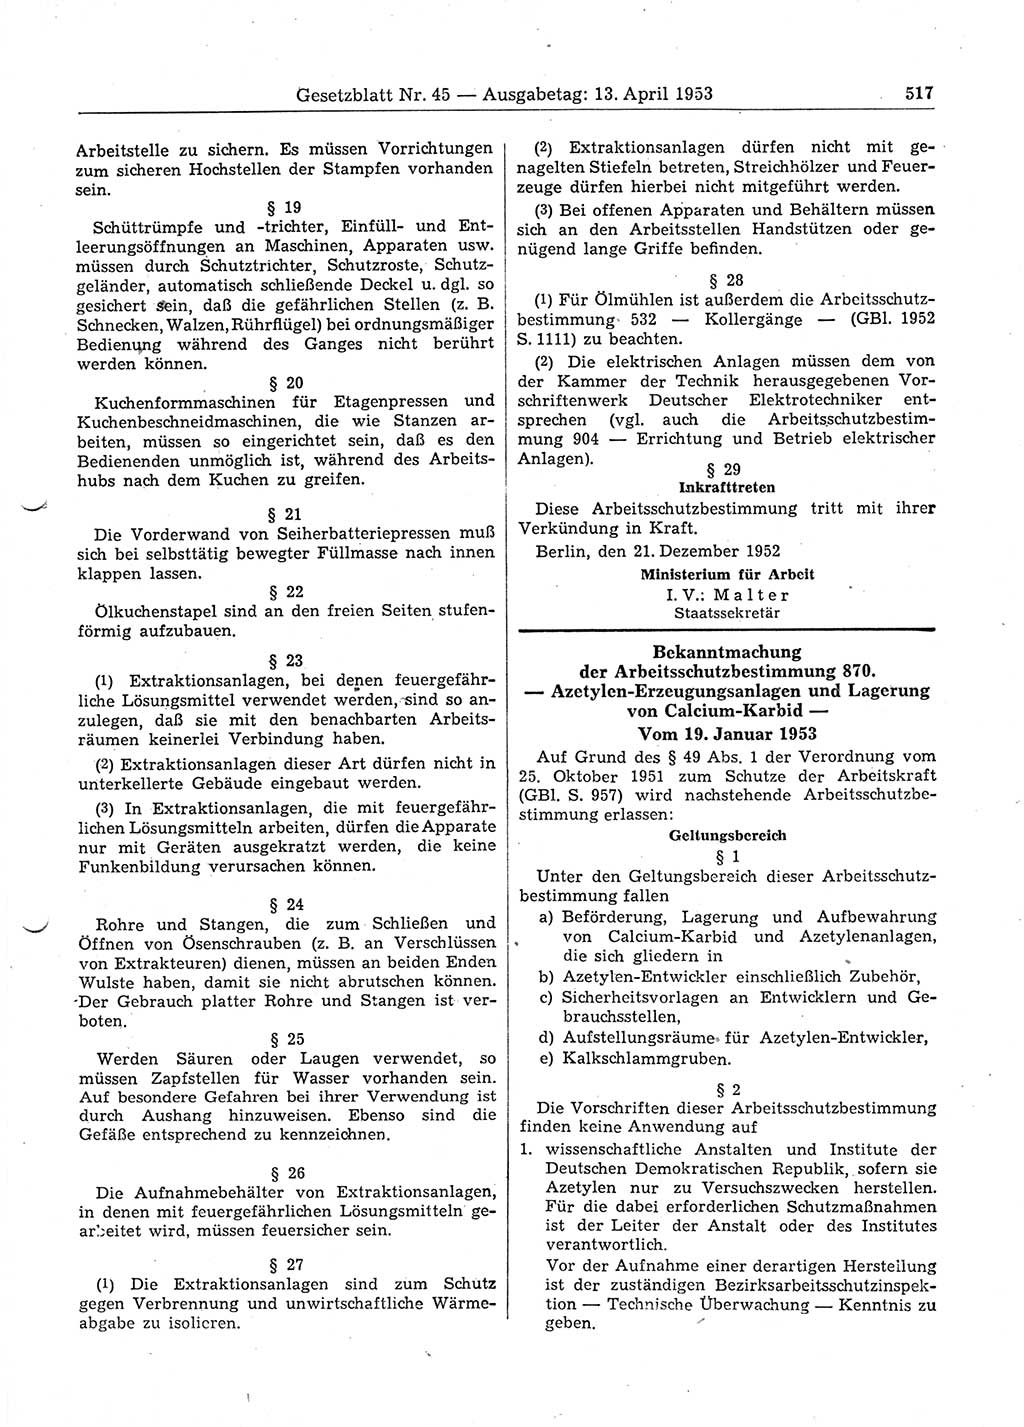 Gesetzblatt (GBl.) der Deutschen Demokratischen Republik (DDR) 1953, Seite 517 (GBl. DDR 1953, S. 517)